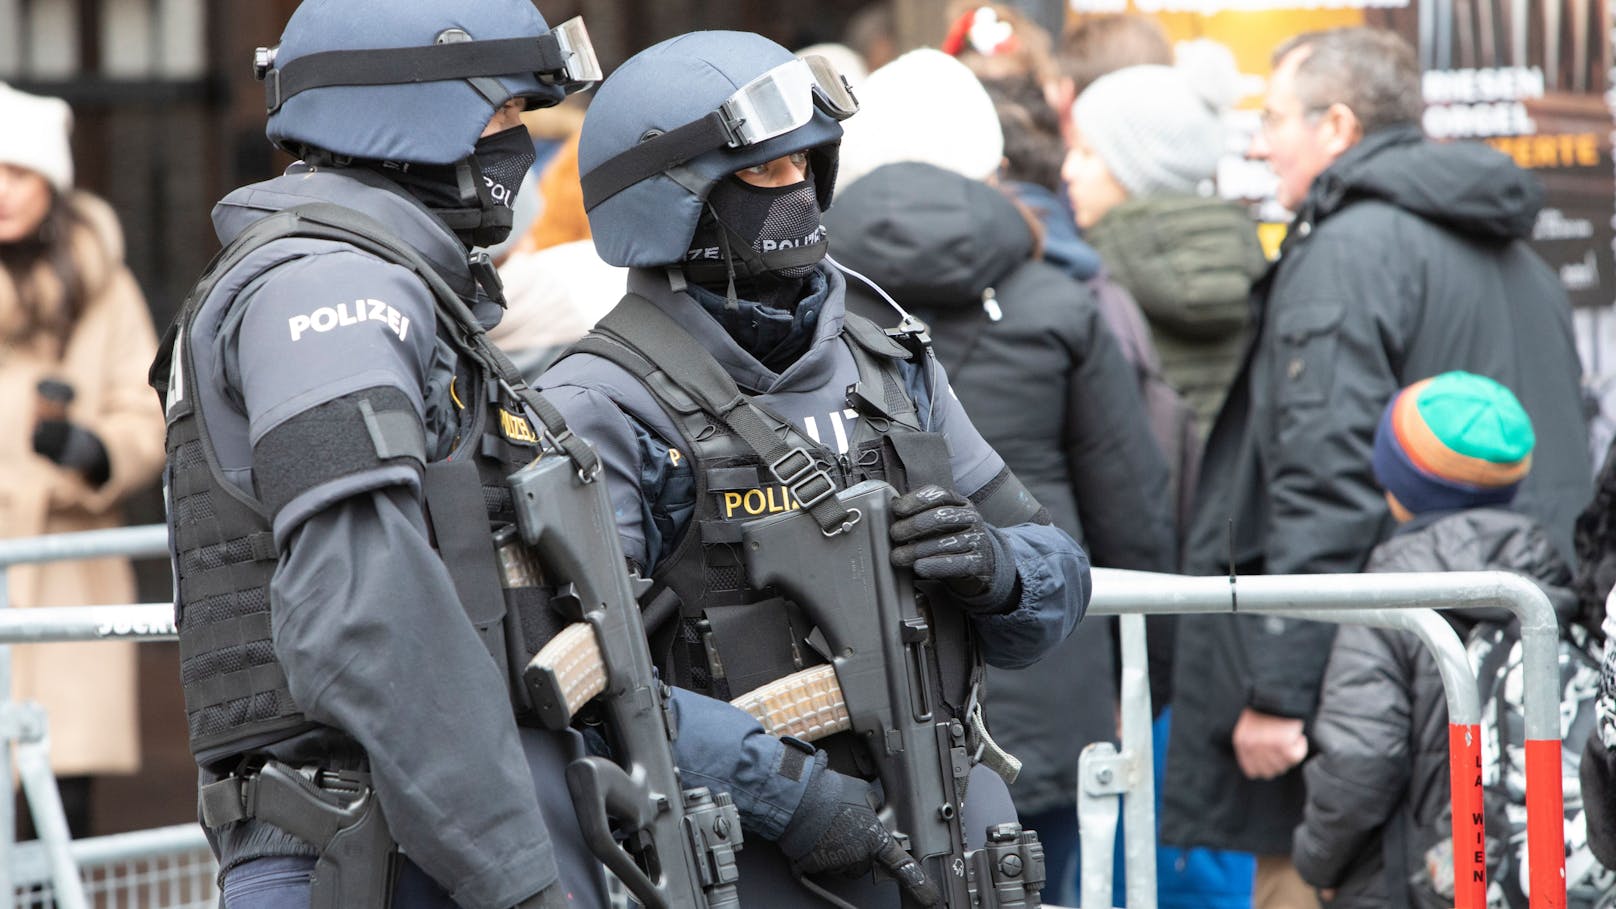 "Hohe" Terrorgefahr – Karner erhöht Polizeipräsenz